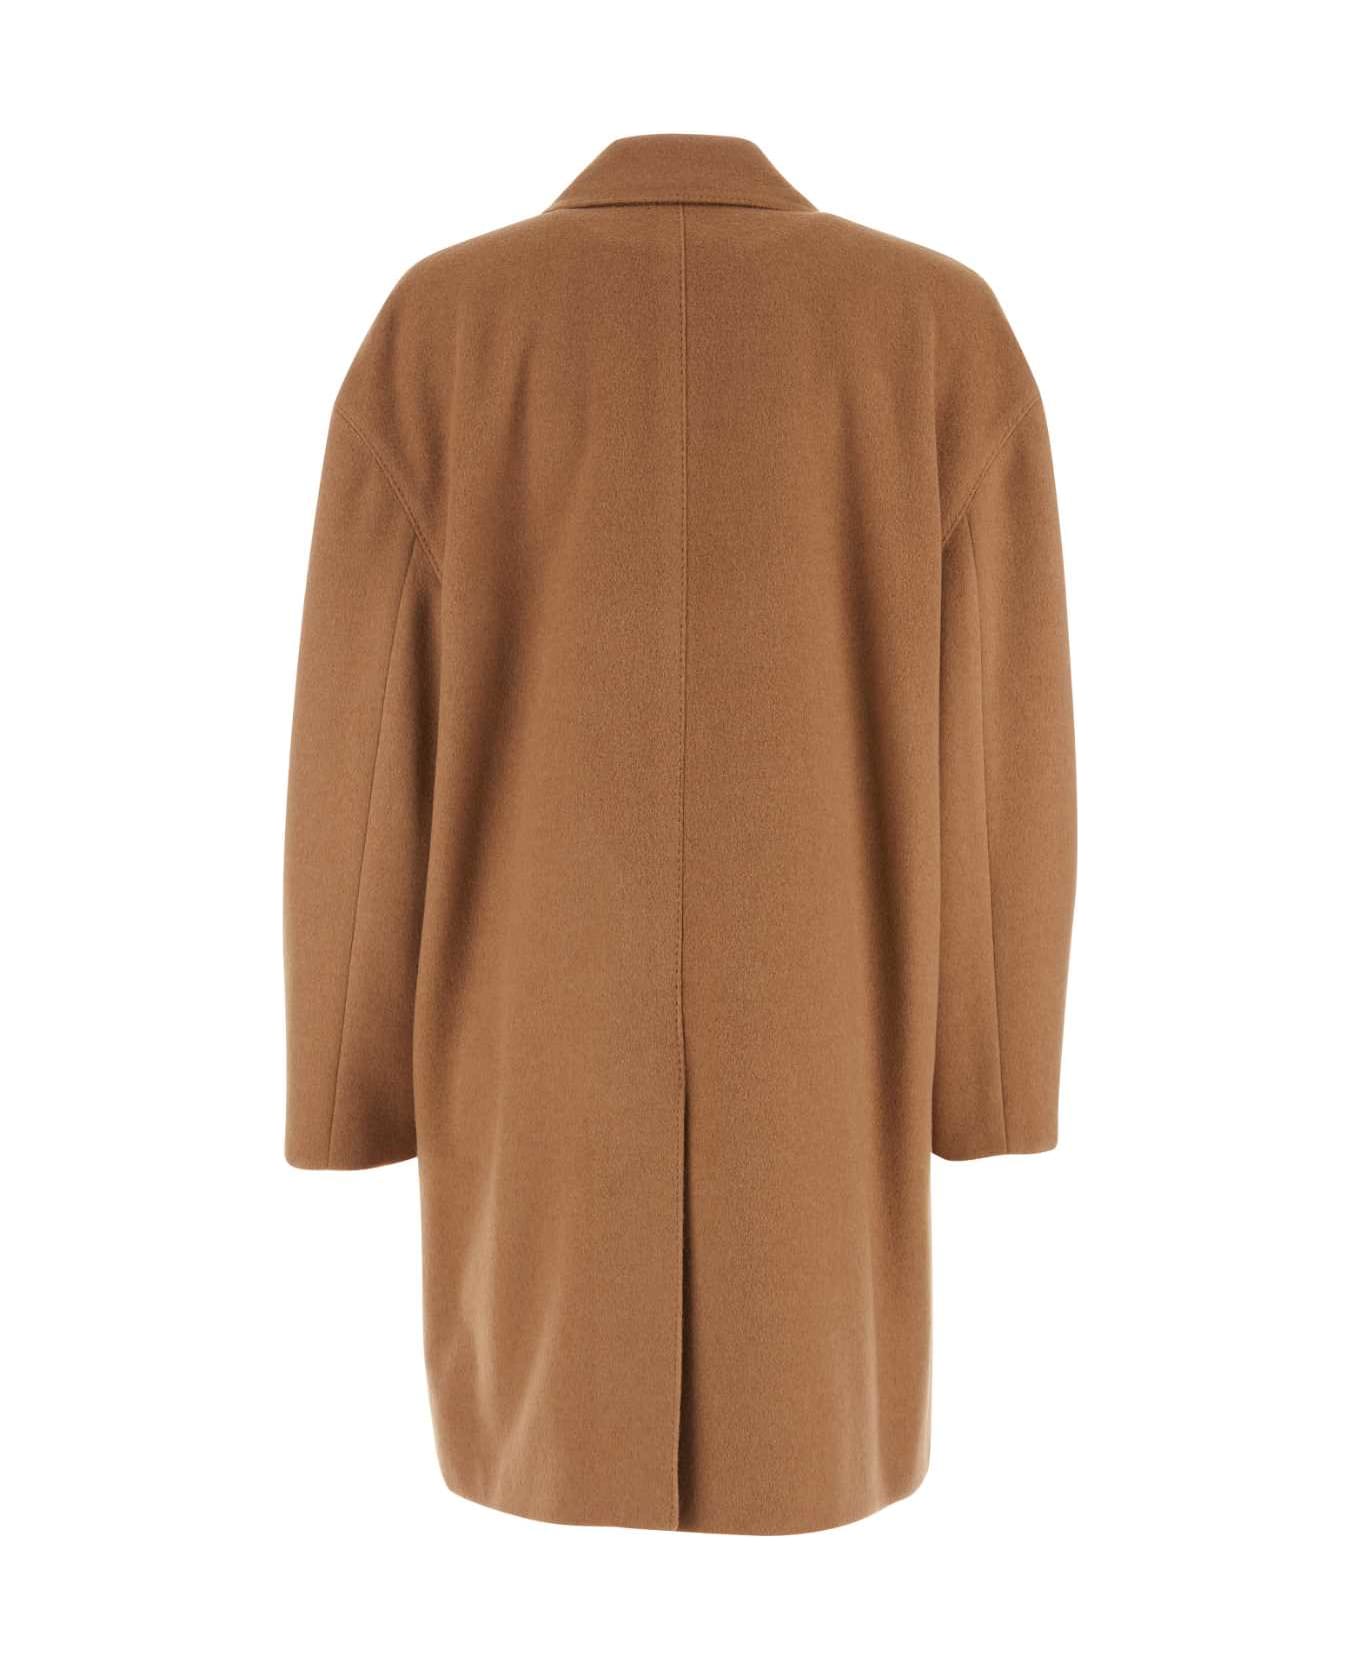 Gucci Cappuccino Wool Coat - CAMEL コート